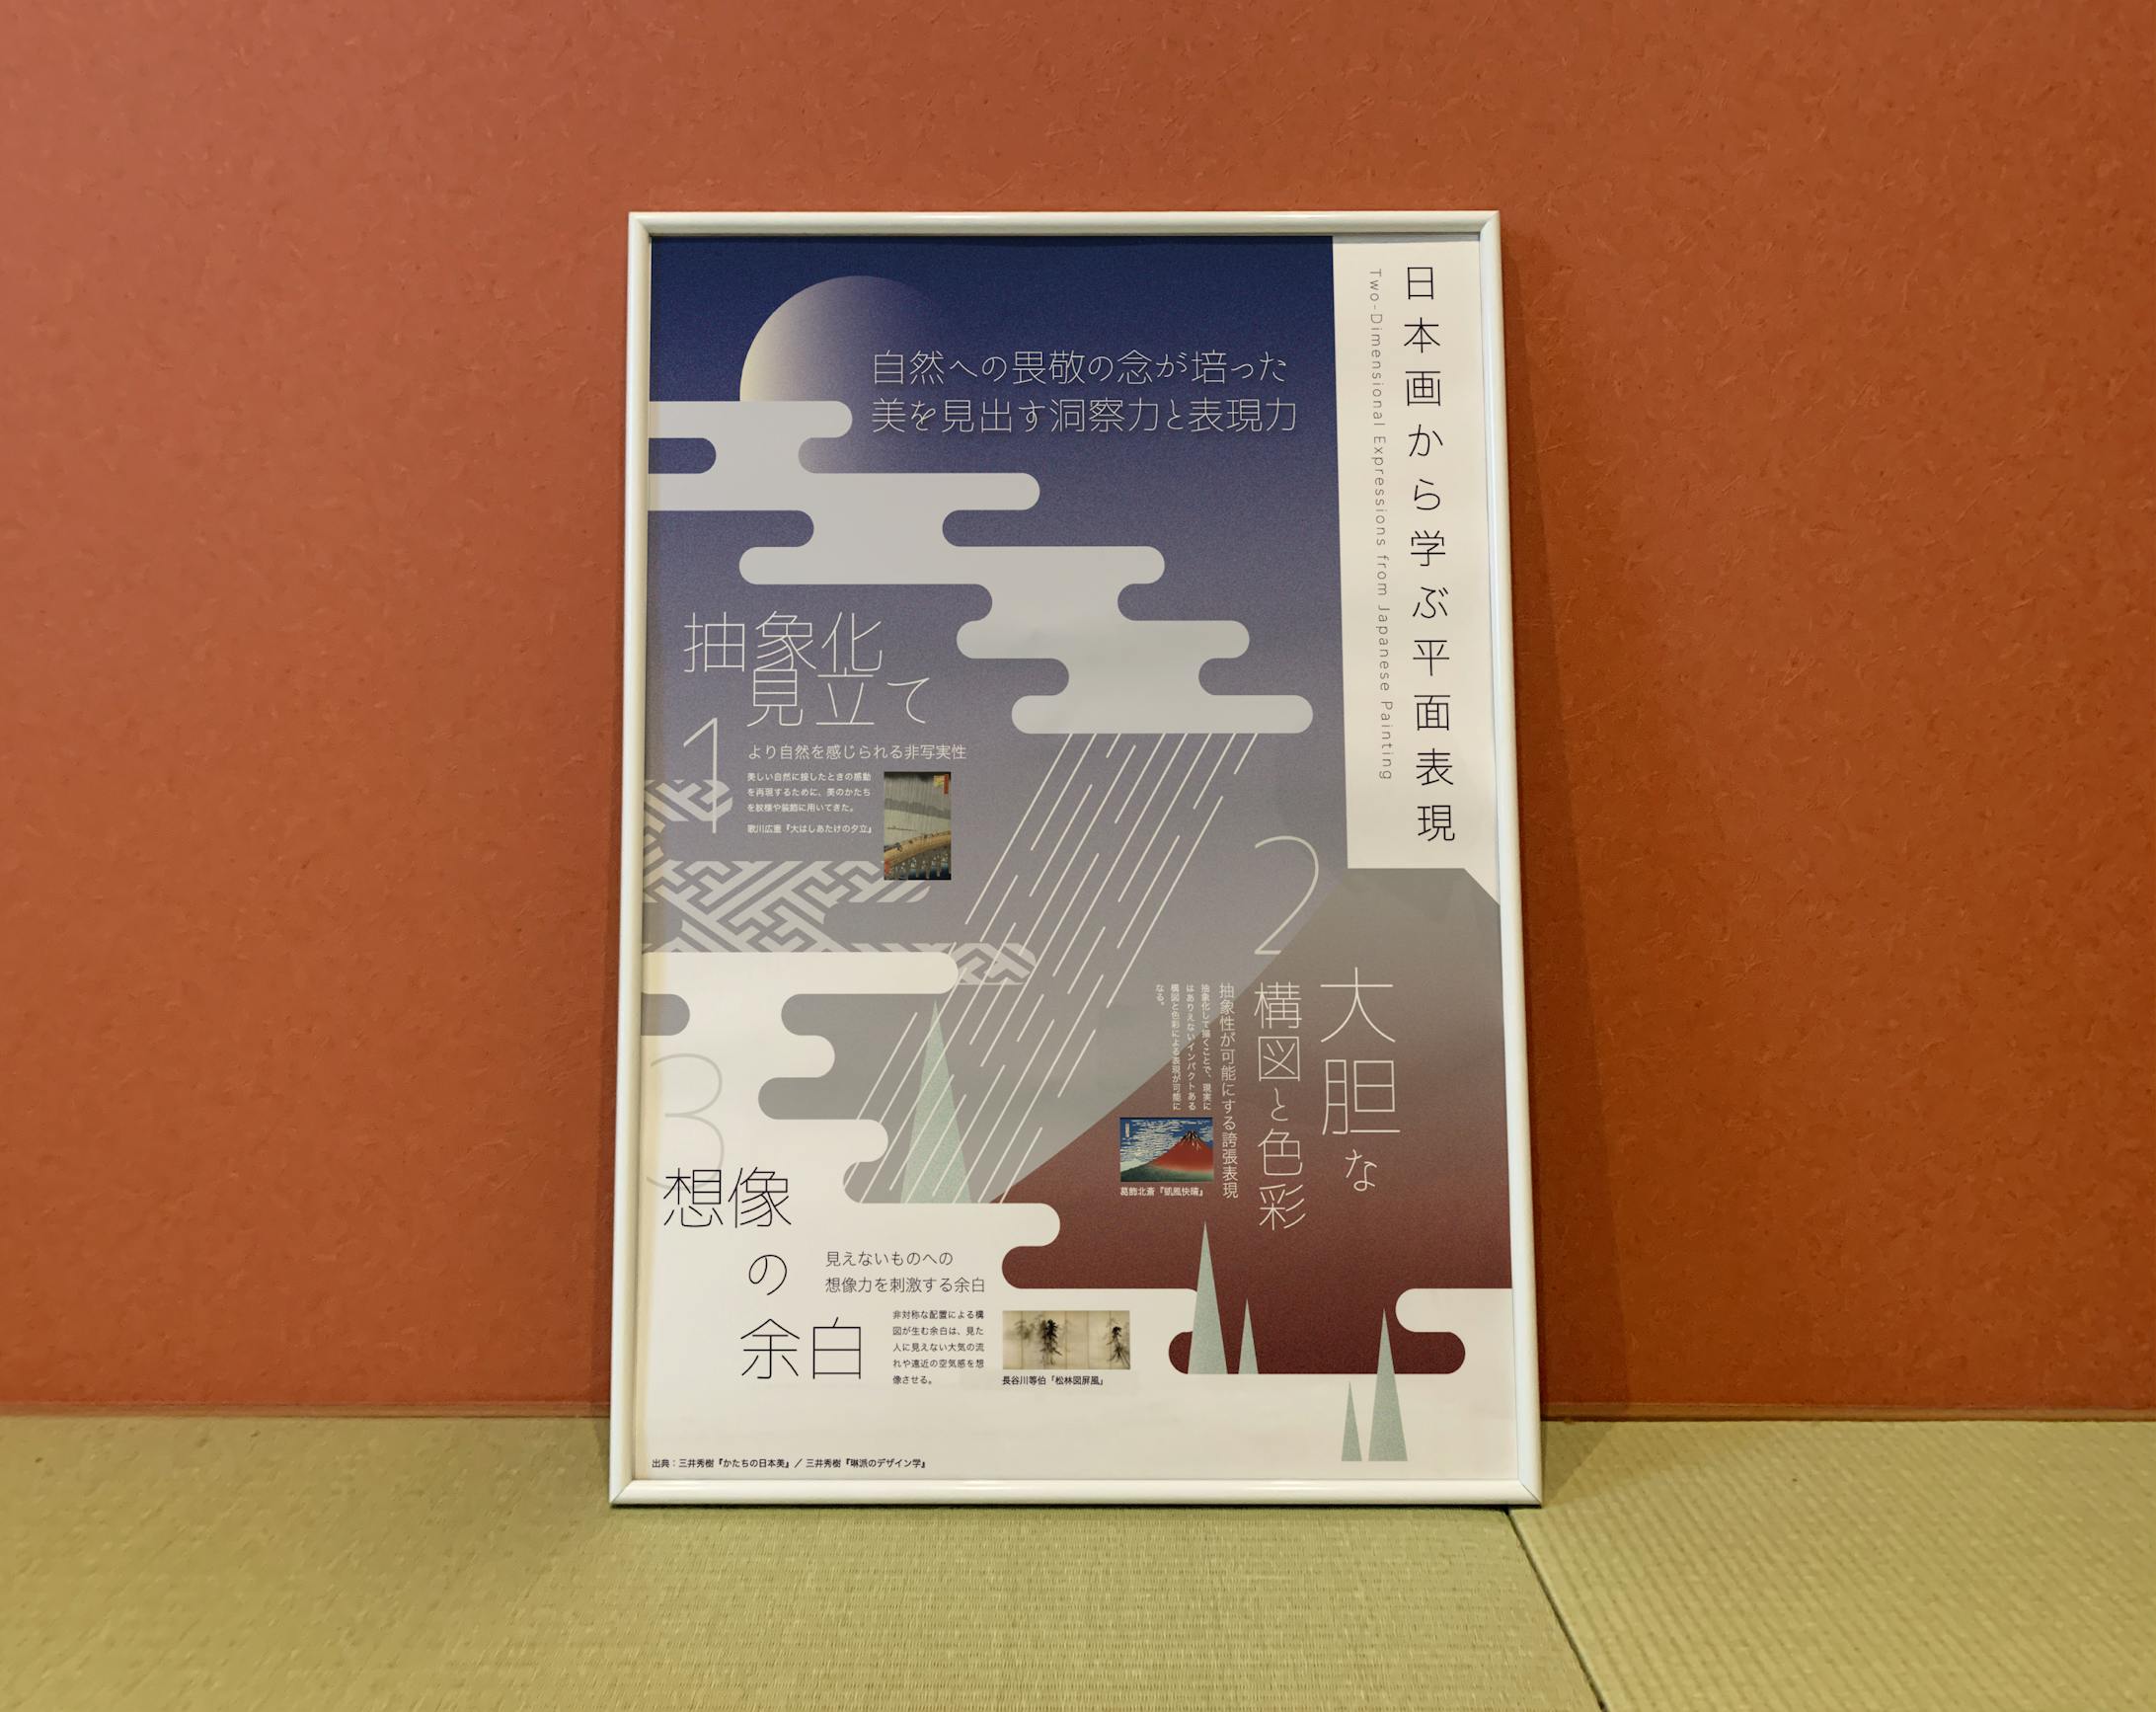 インフォグラフィック『日本画から学ぶ平面表現』-1